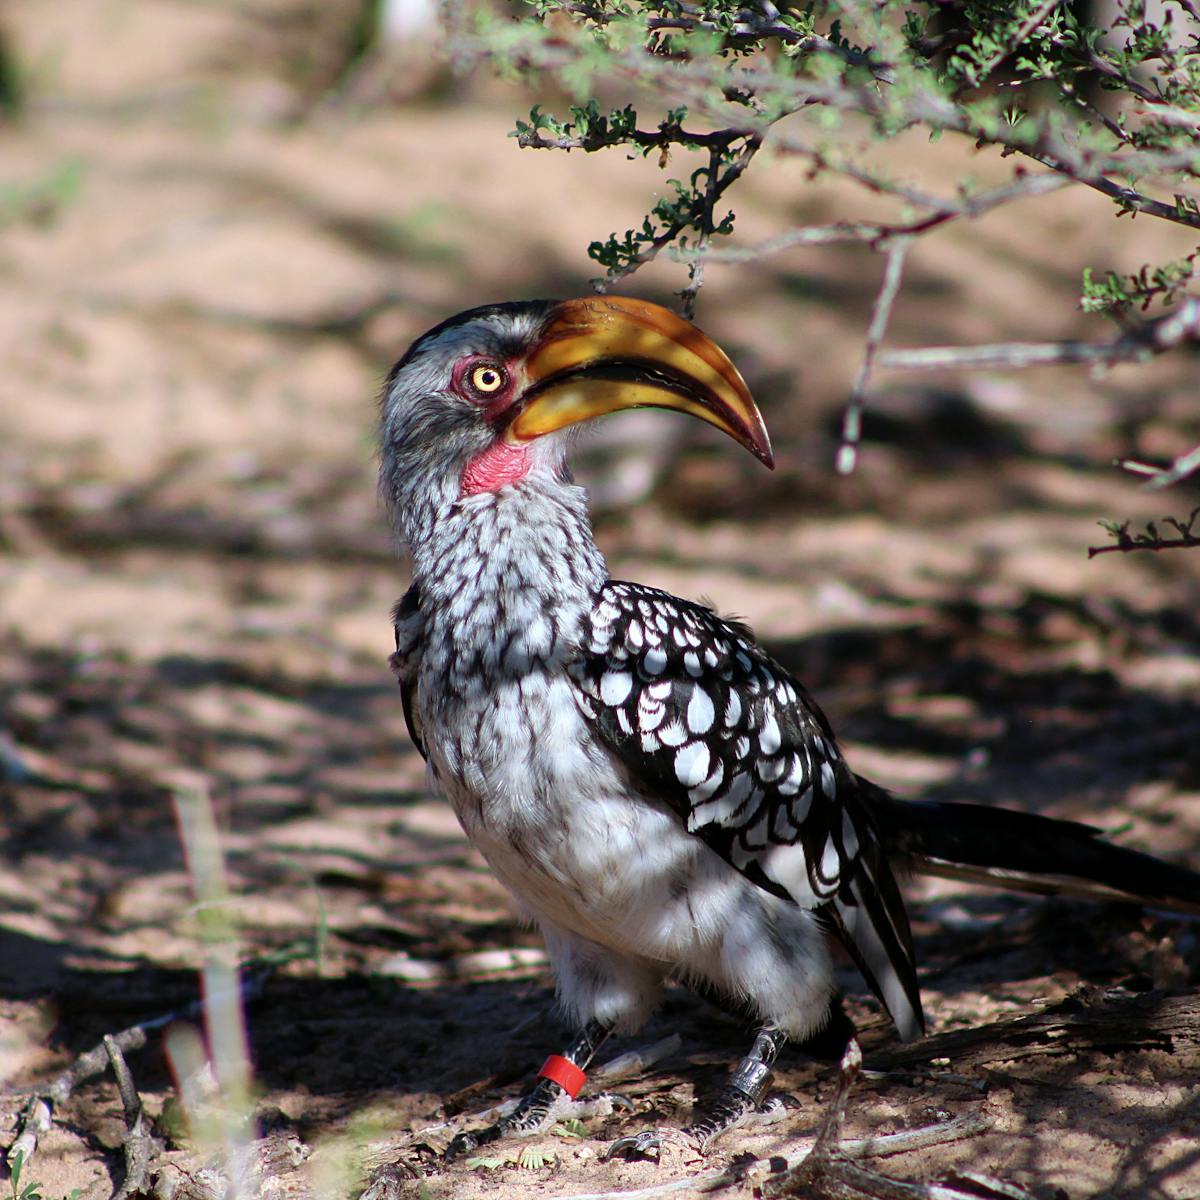 Hotter Kalahari desert may stop hornbills breeding by 2027